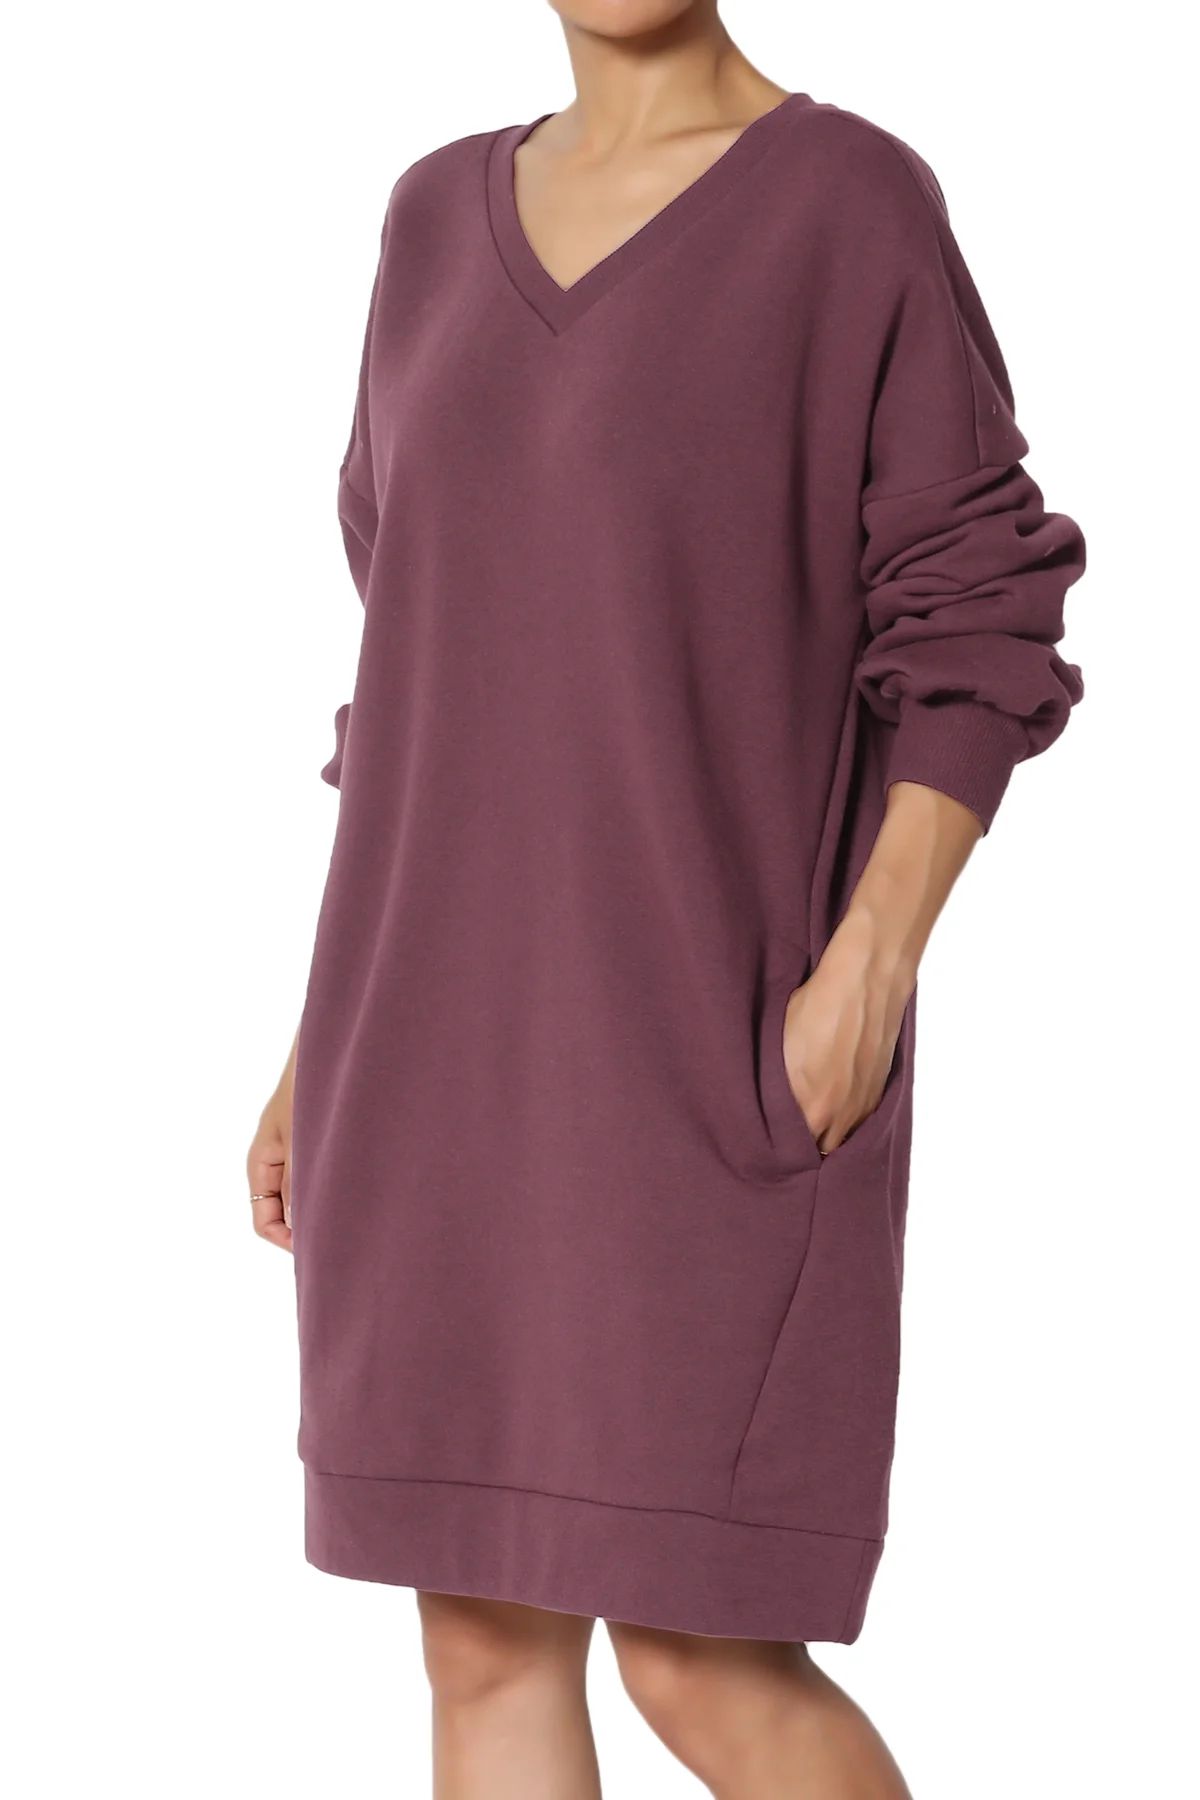 TheMogan Women's PLUS Oversized V-Neck Long Sleeve Pocket Fleece Tunic Sweatshirts - Walmart.com | Walmart (US)